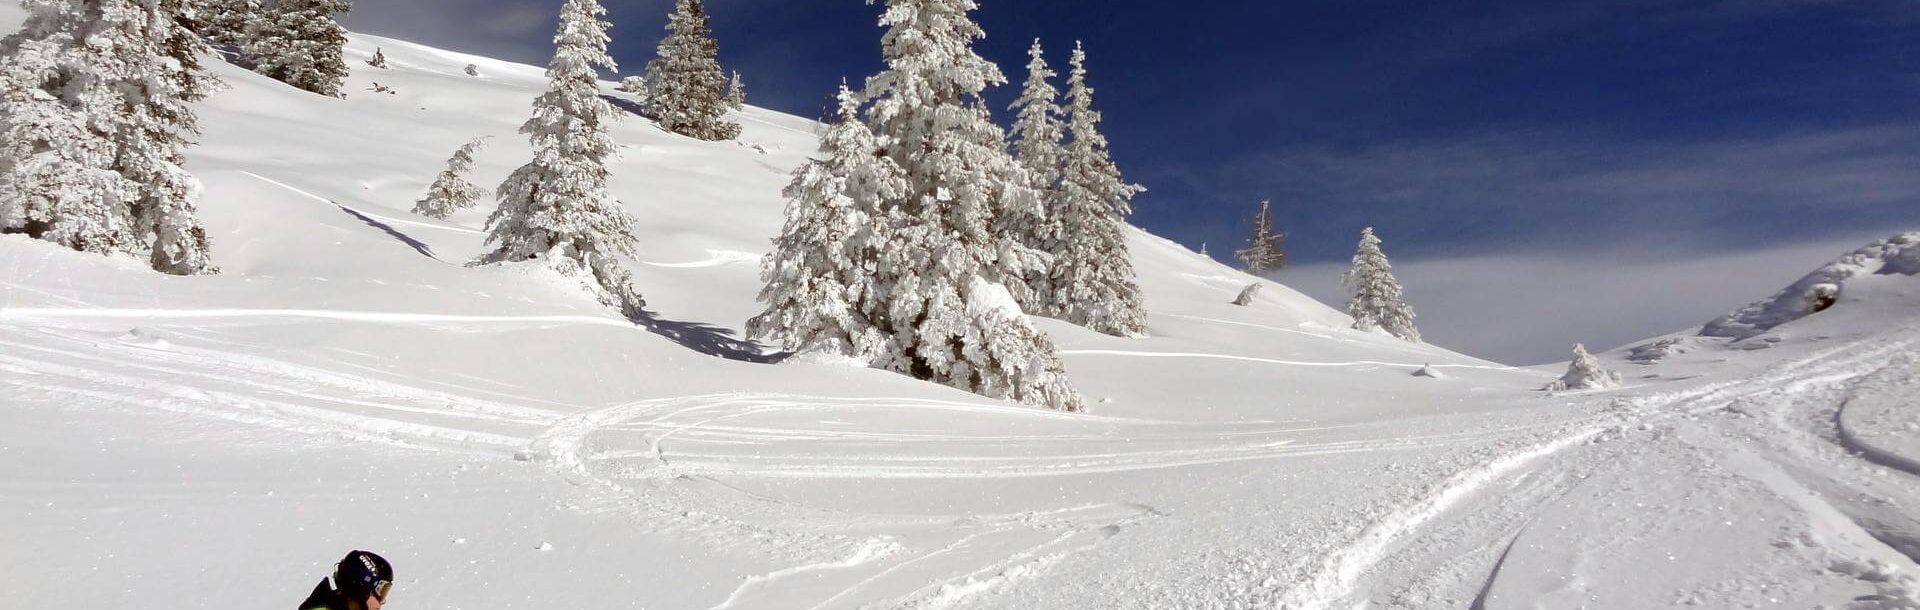 Ski & Snowboarden in Osttirol - Wintersport im Schnee | OsttirolerLand.com